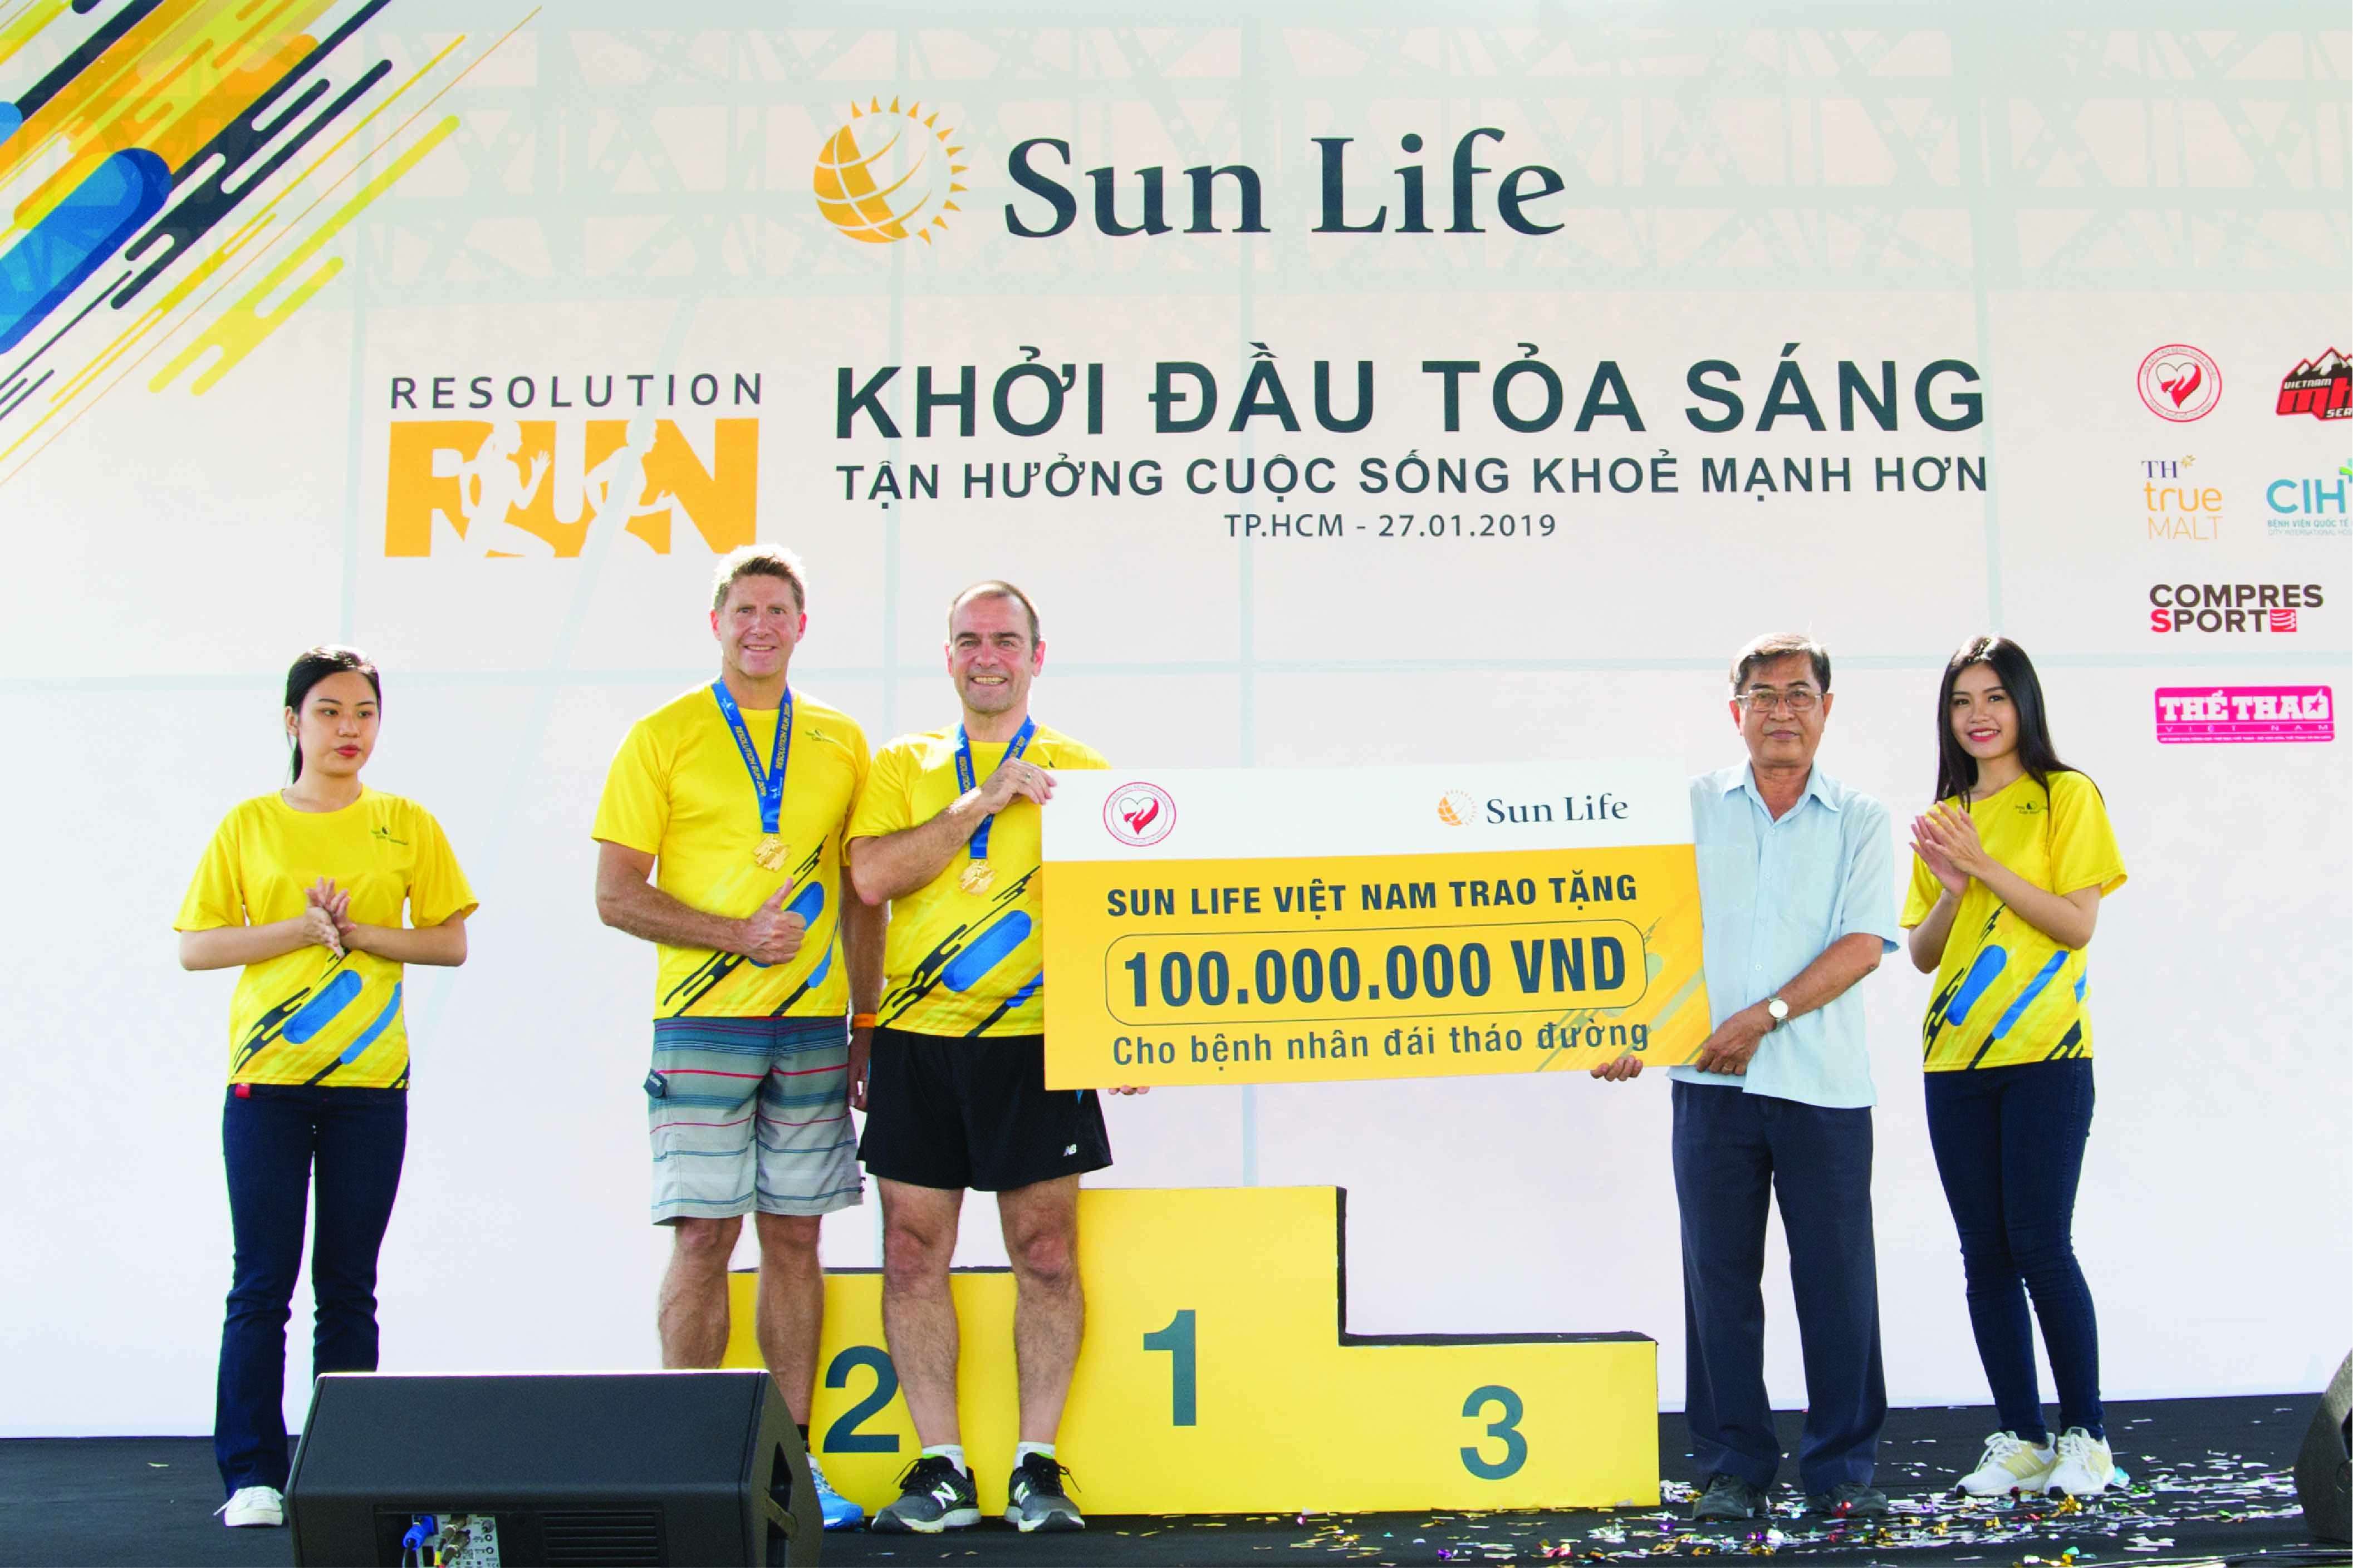 Sun Life Việt Nam trao tặng 100.000.000 đồng cho bệnh nhân đái tháo đường